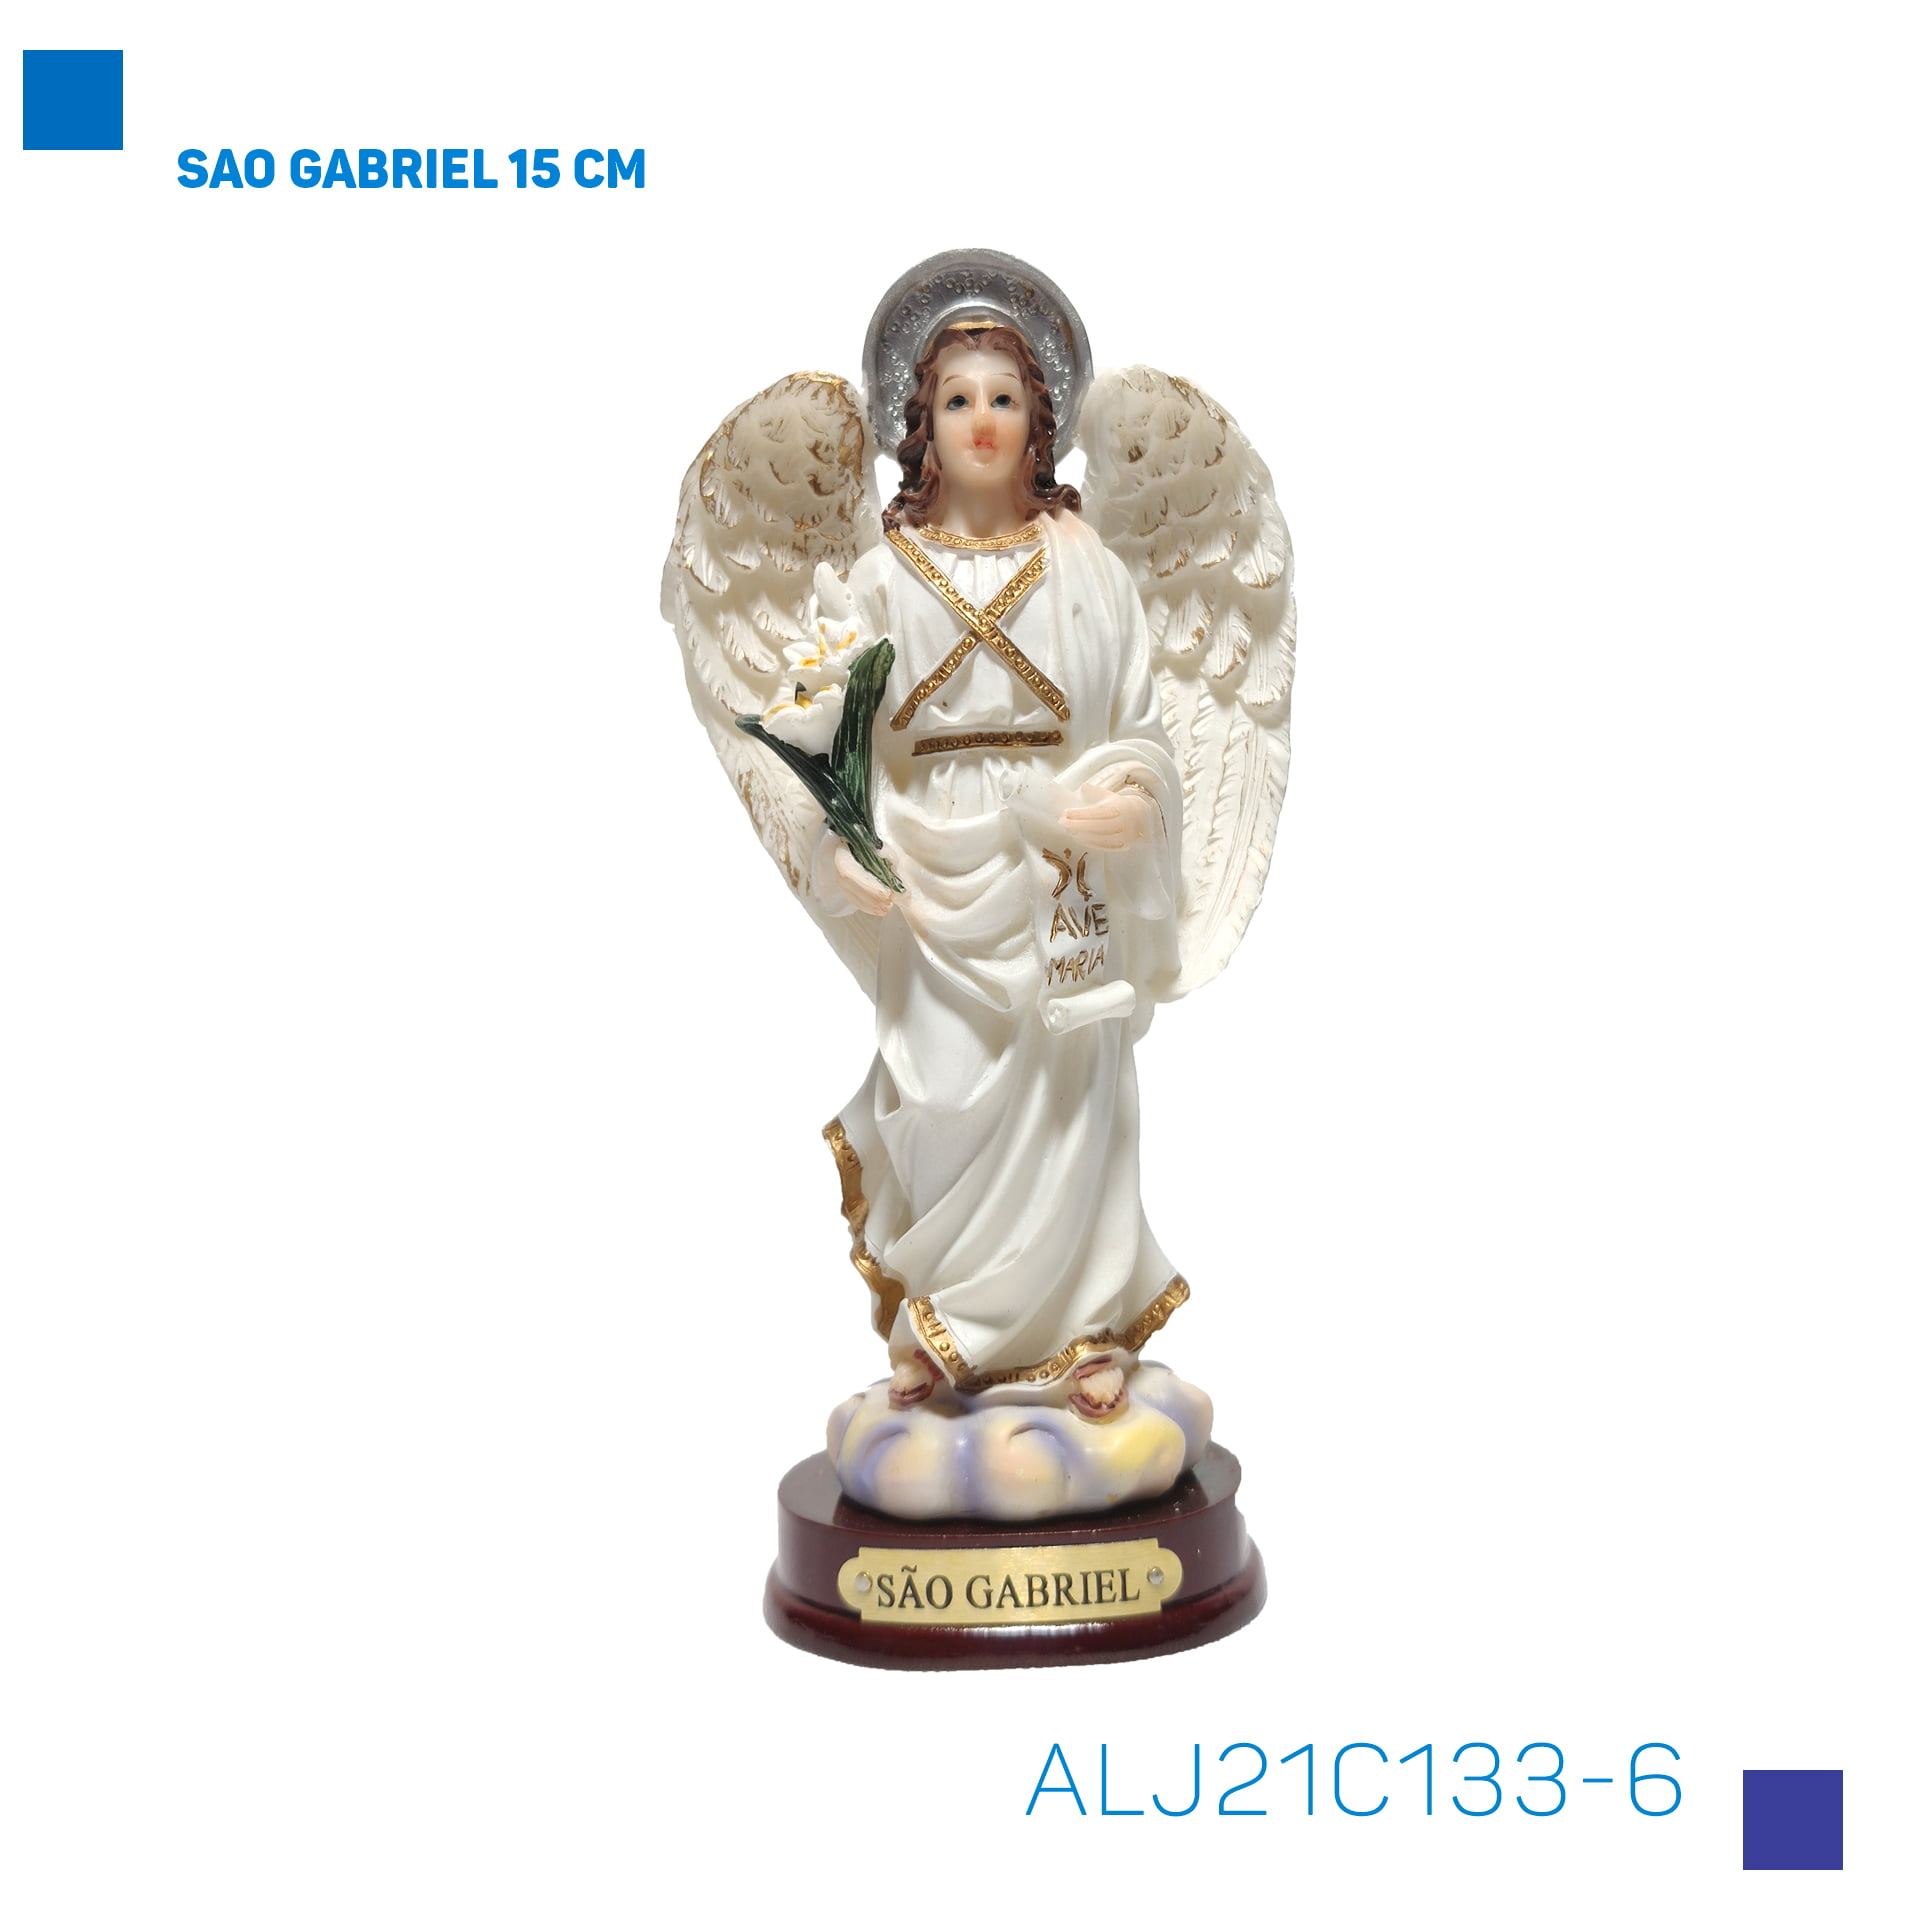 Bira Artigos Religiosos - SAO GABRIEL 15CM - Cód. ALJ21C133-6